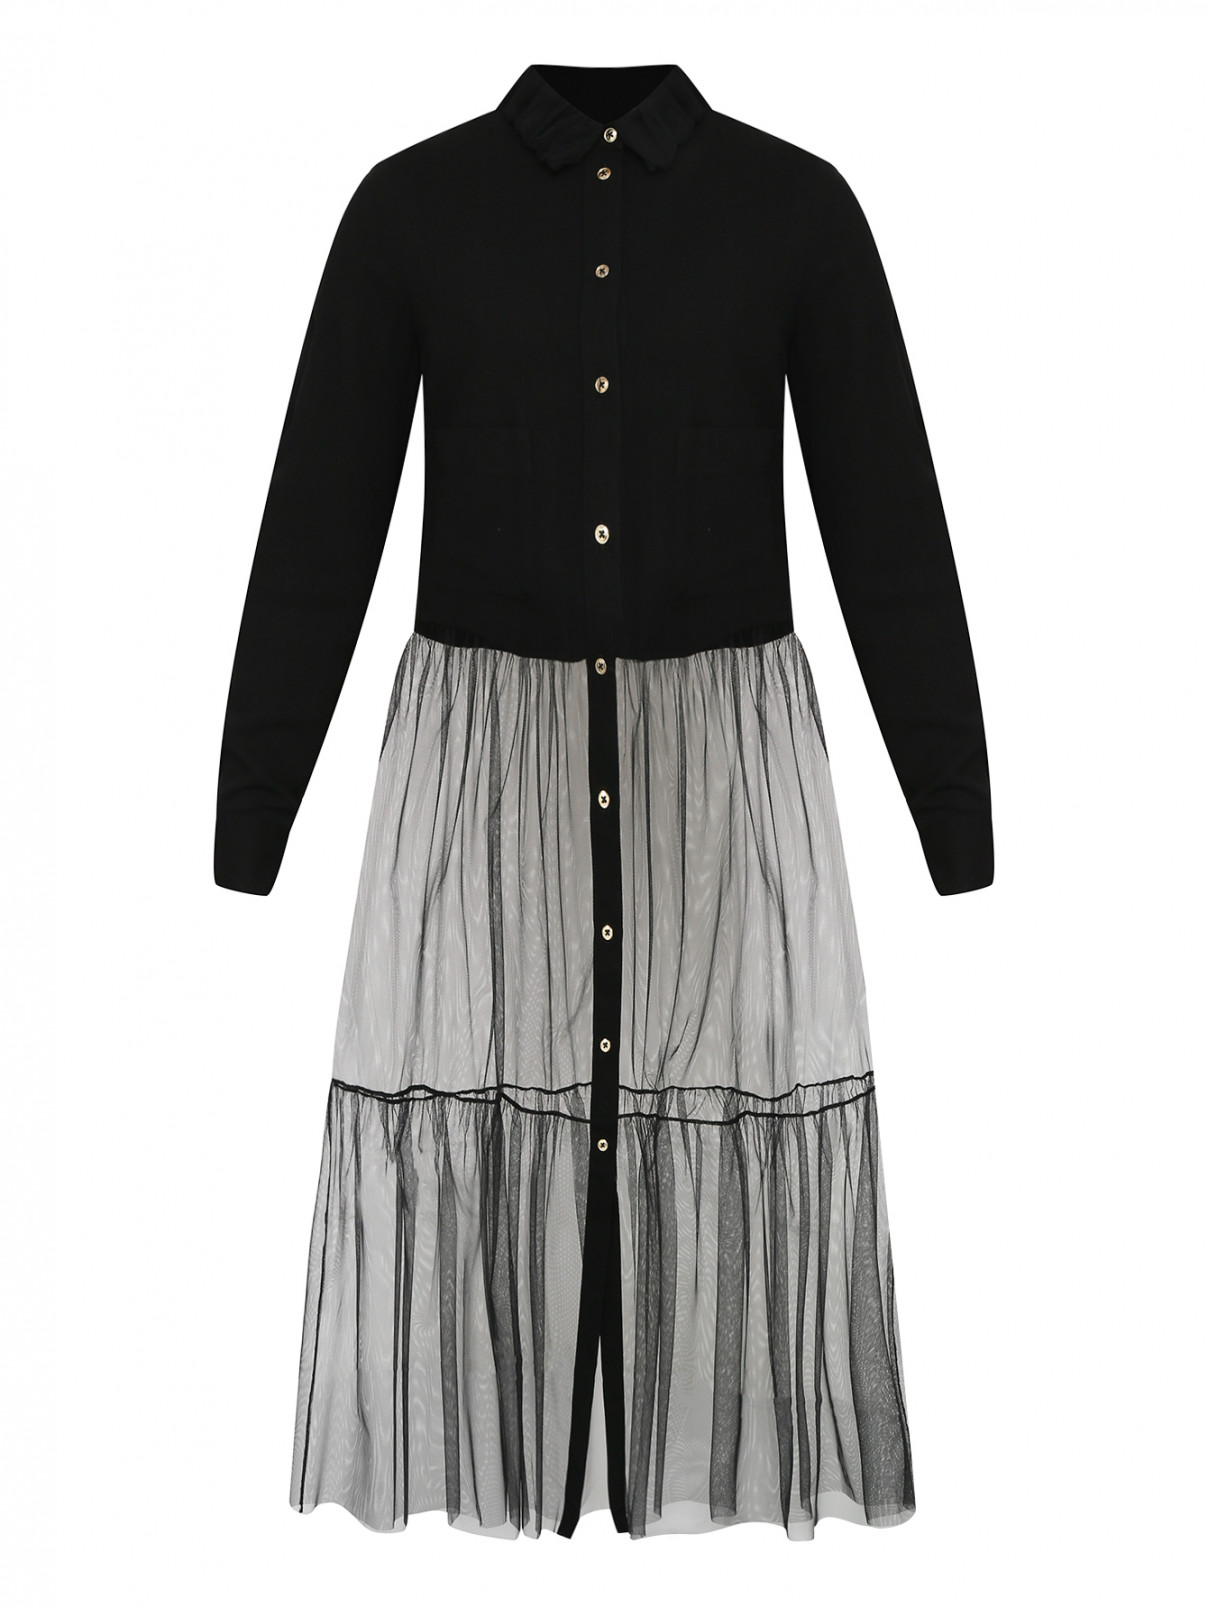 Платье-рубашка с юбкой из сетки MiMiSol  –  Общий вид  – Цвет:  Черный